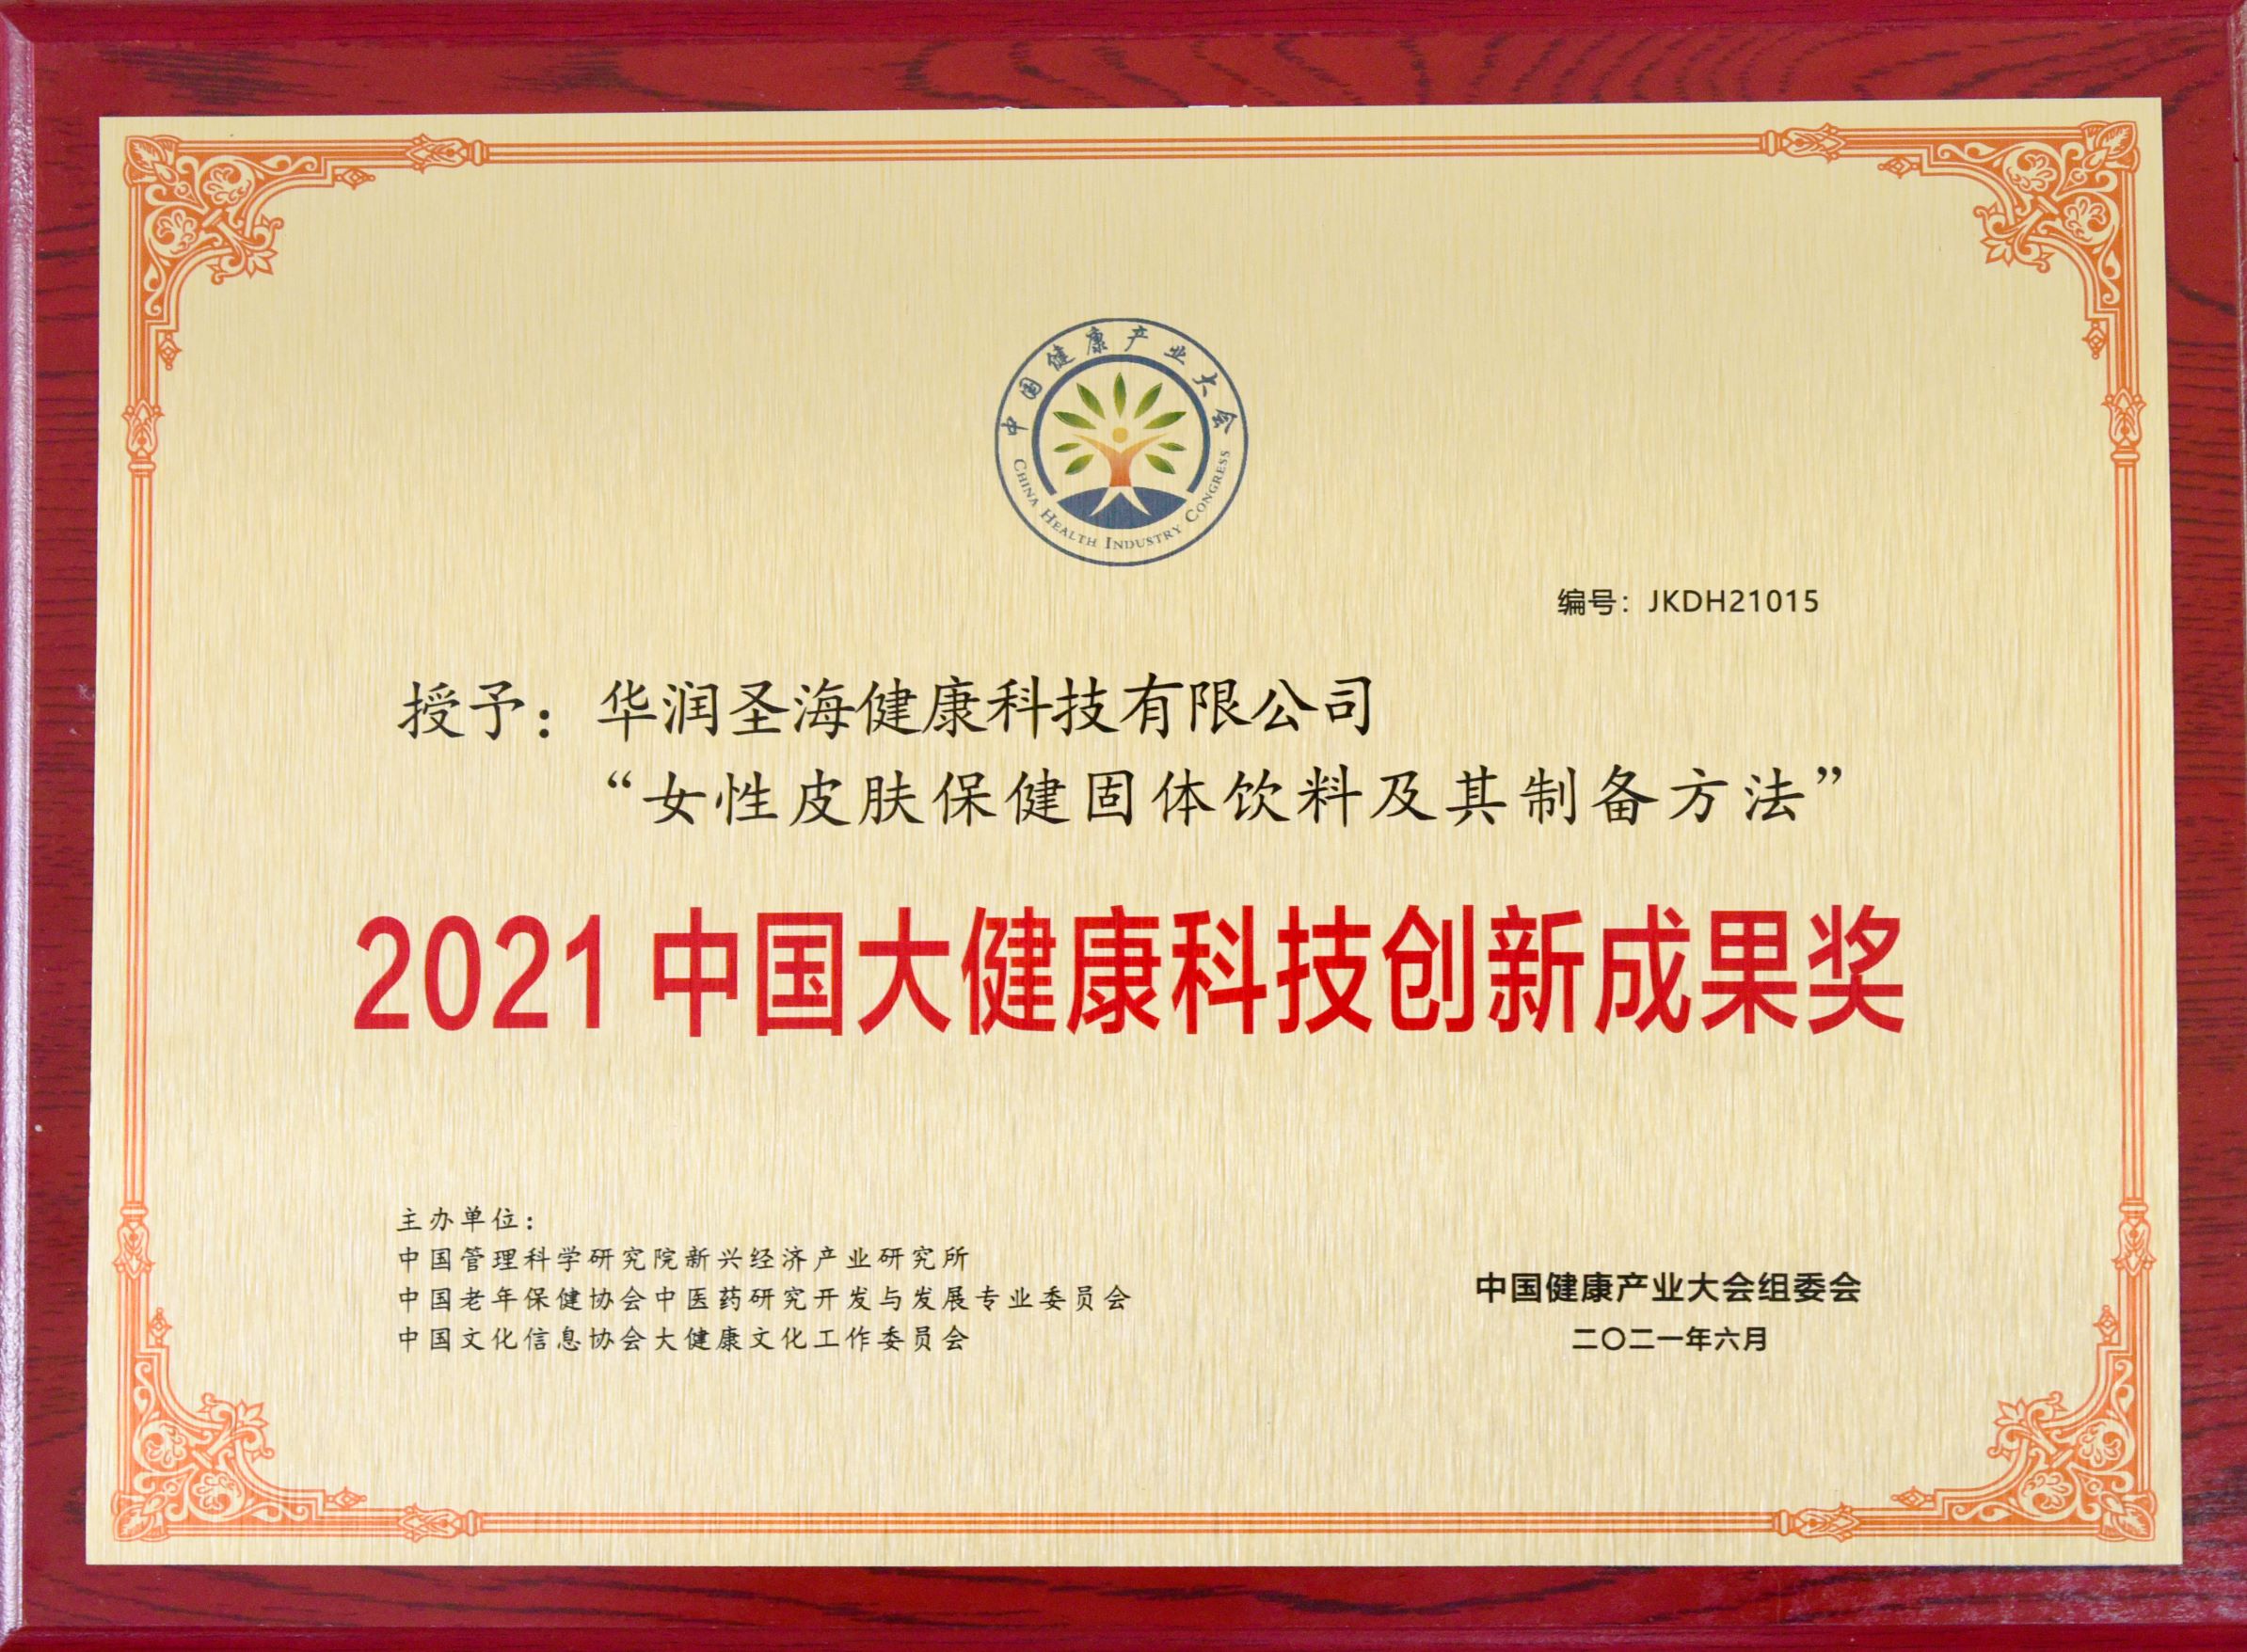 中国大健康科技创新成果奖